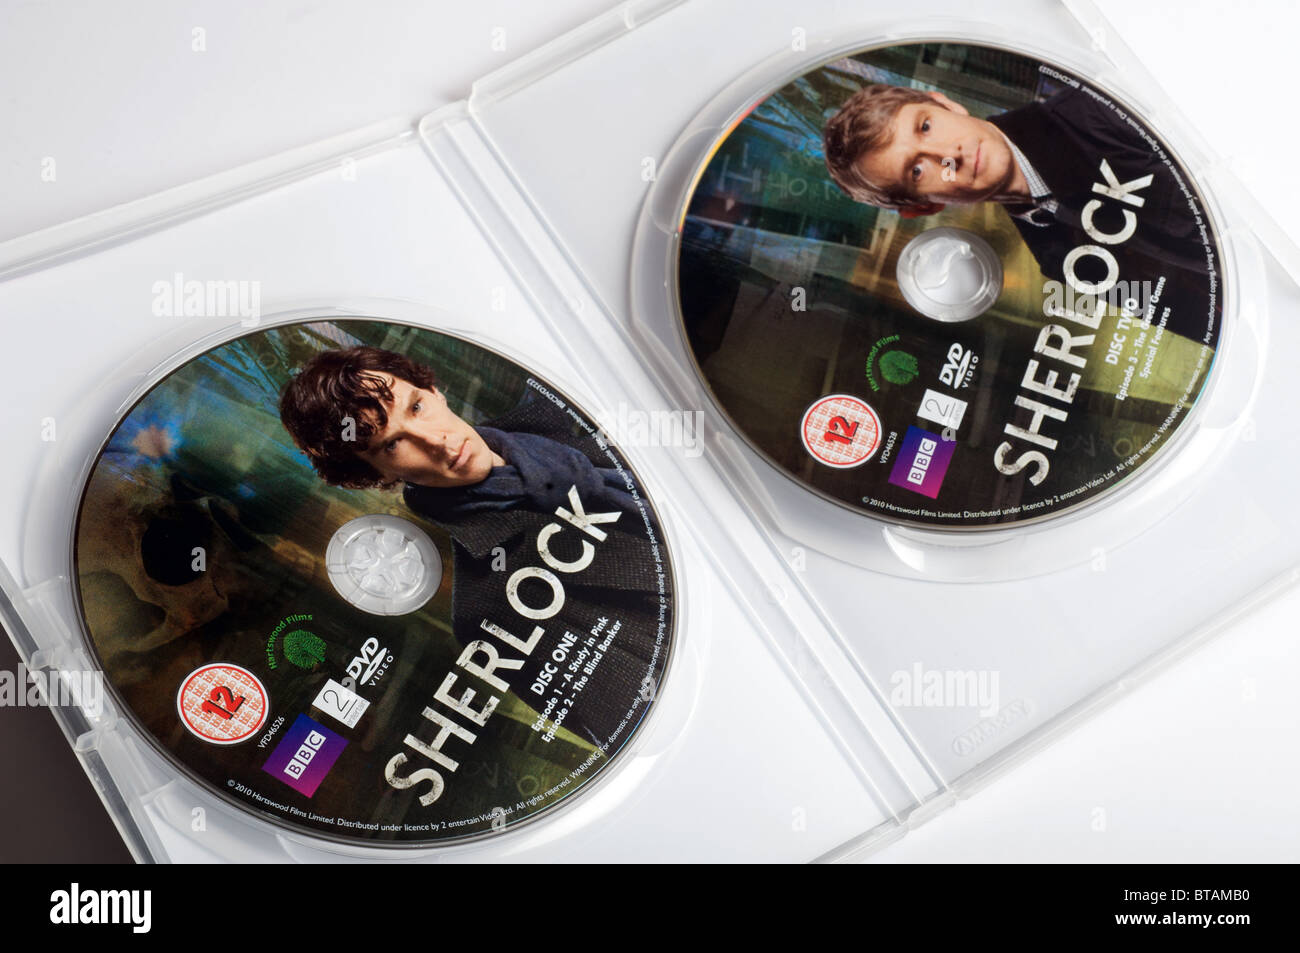 DVD of BBC series 'Sherlock' Stock Photo